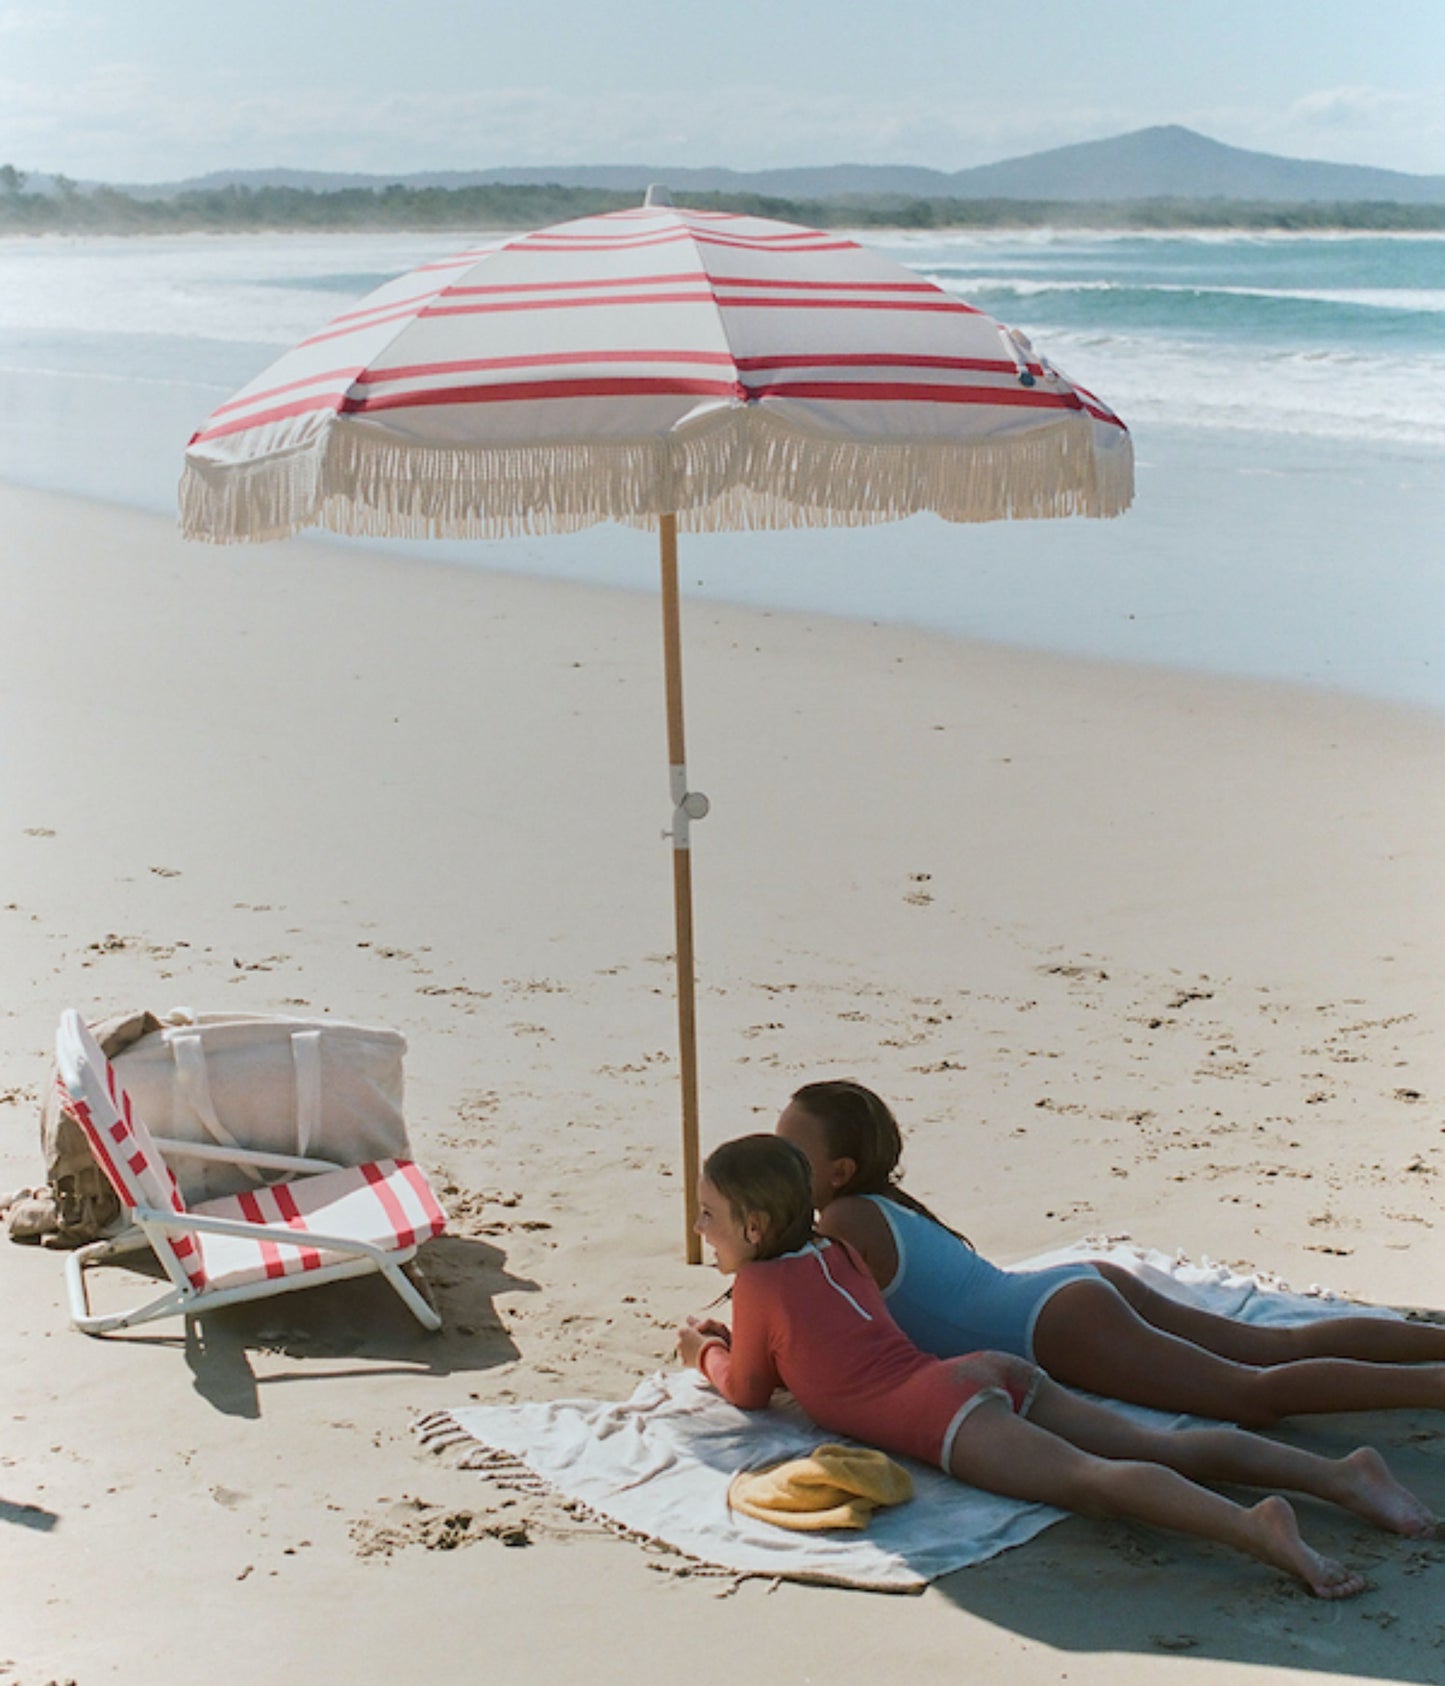 Rio Stripe Beach Umbrella